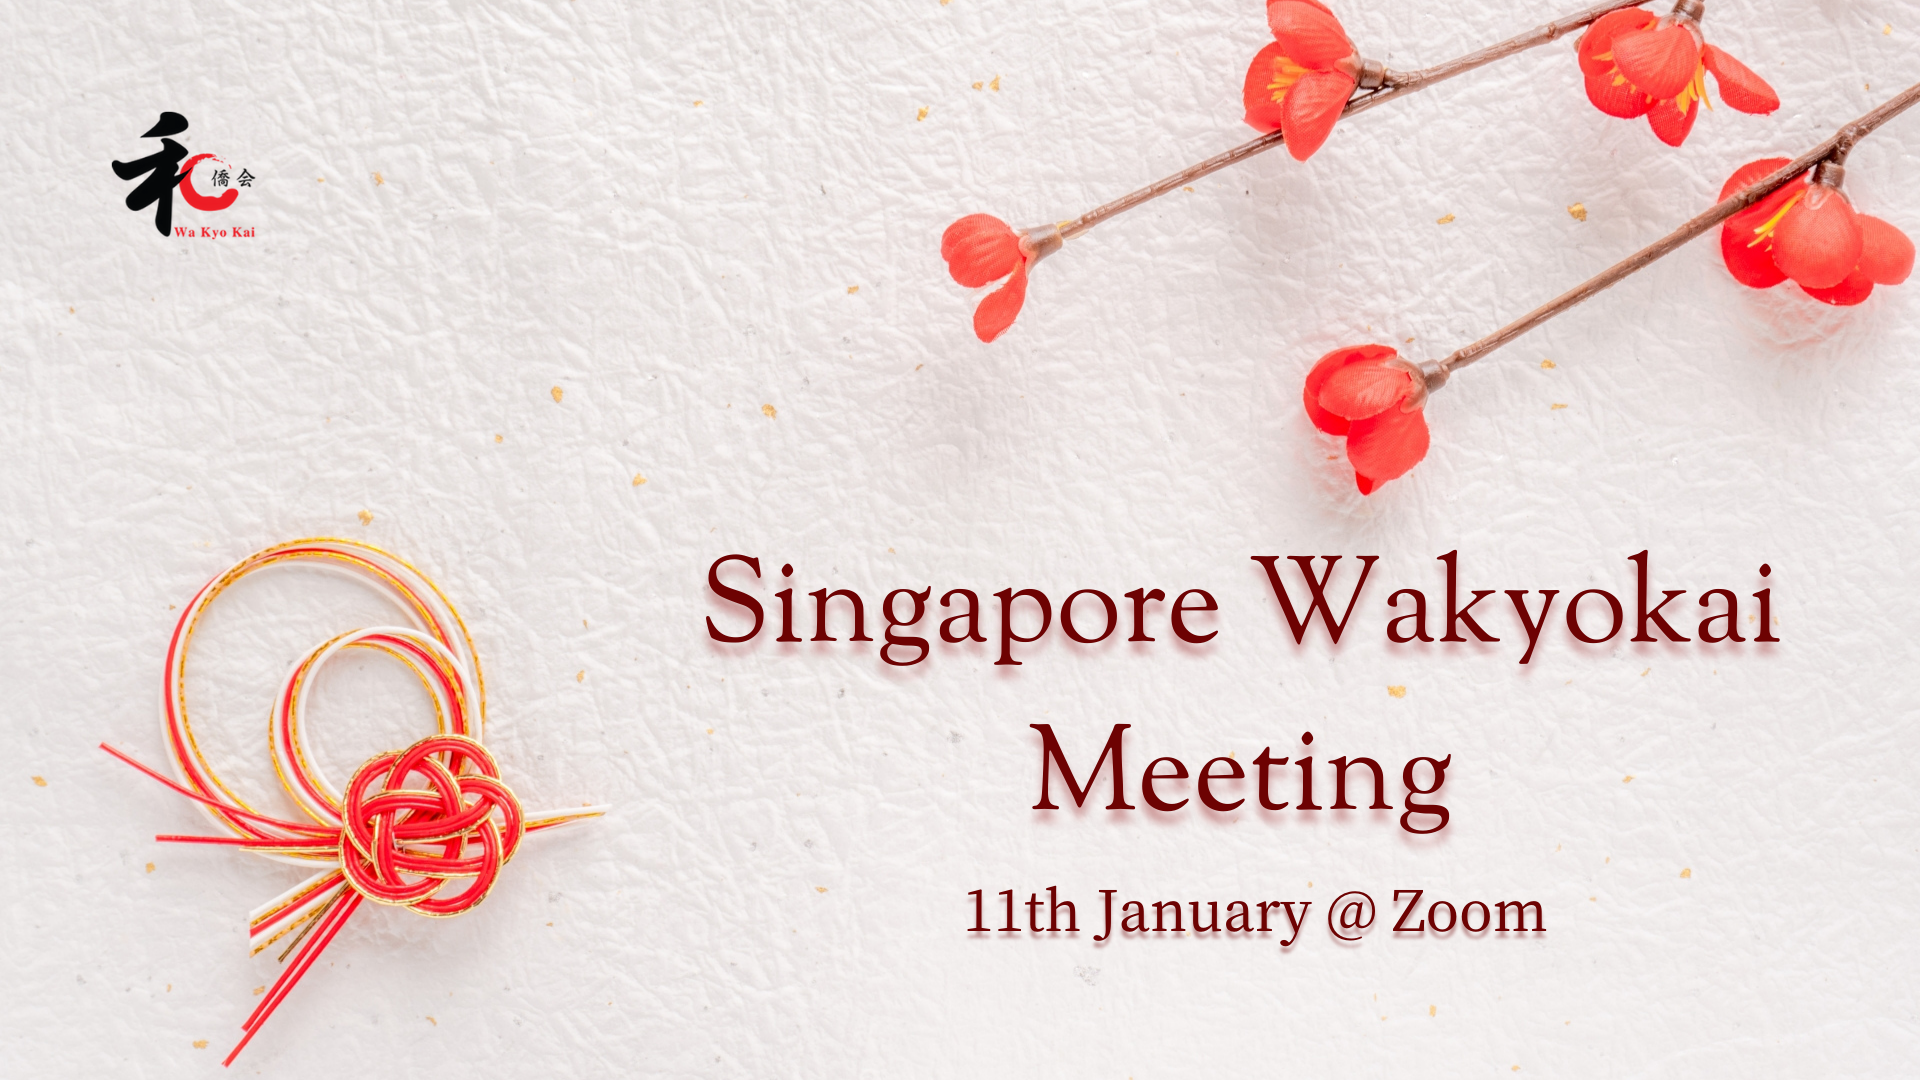 Singapore Wakyokai Meeting